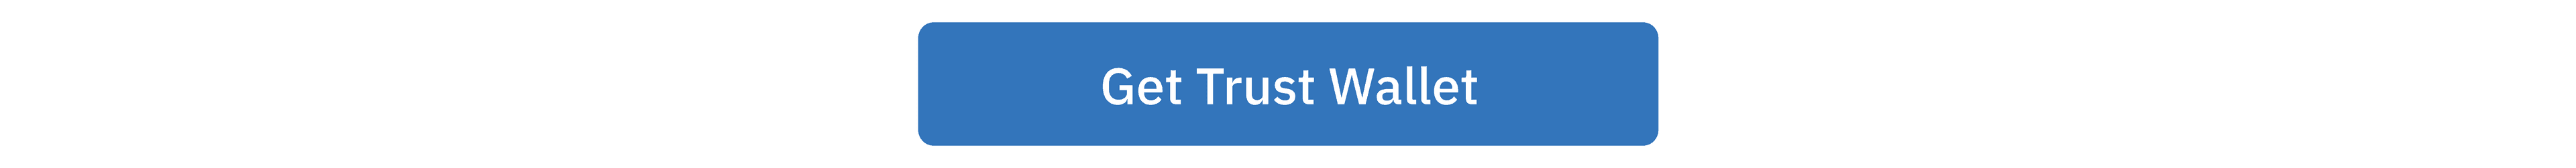 get-trustwallet-cta.png